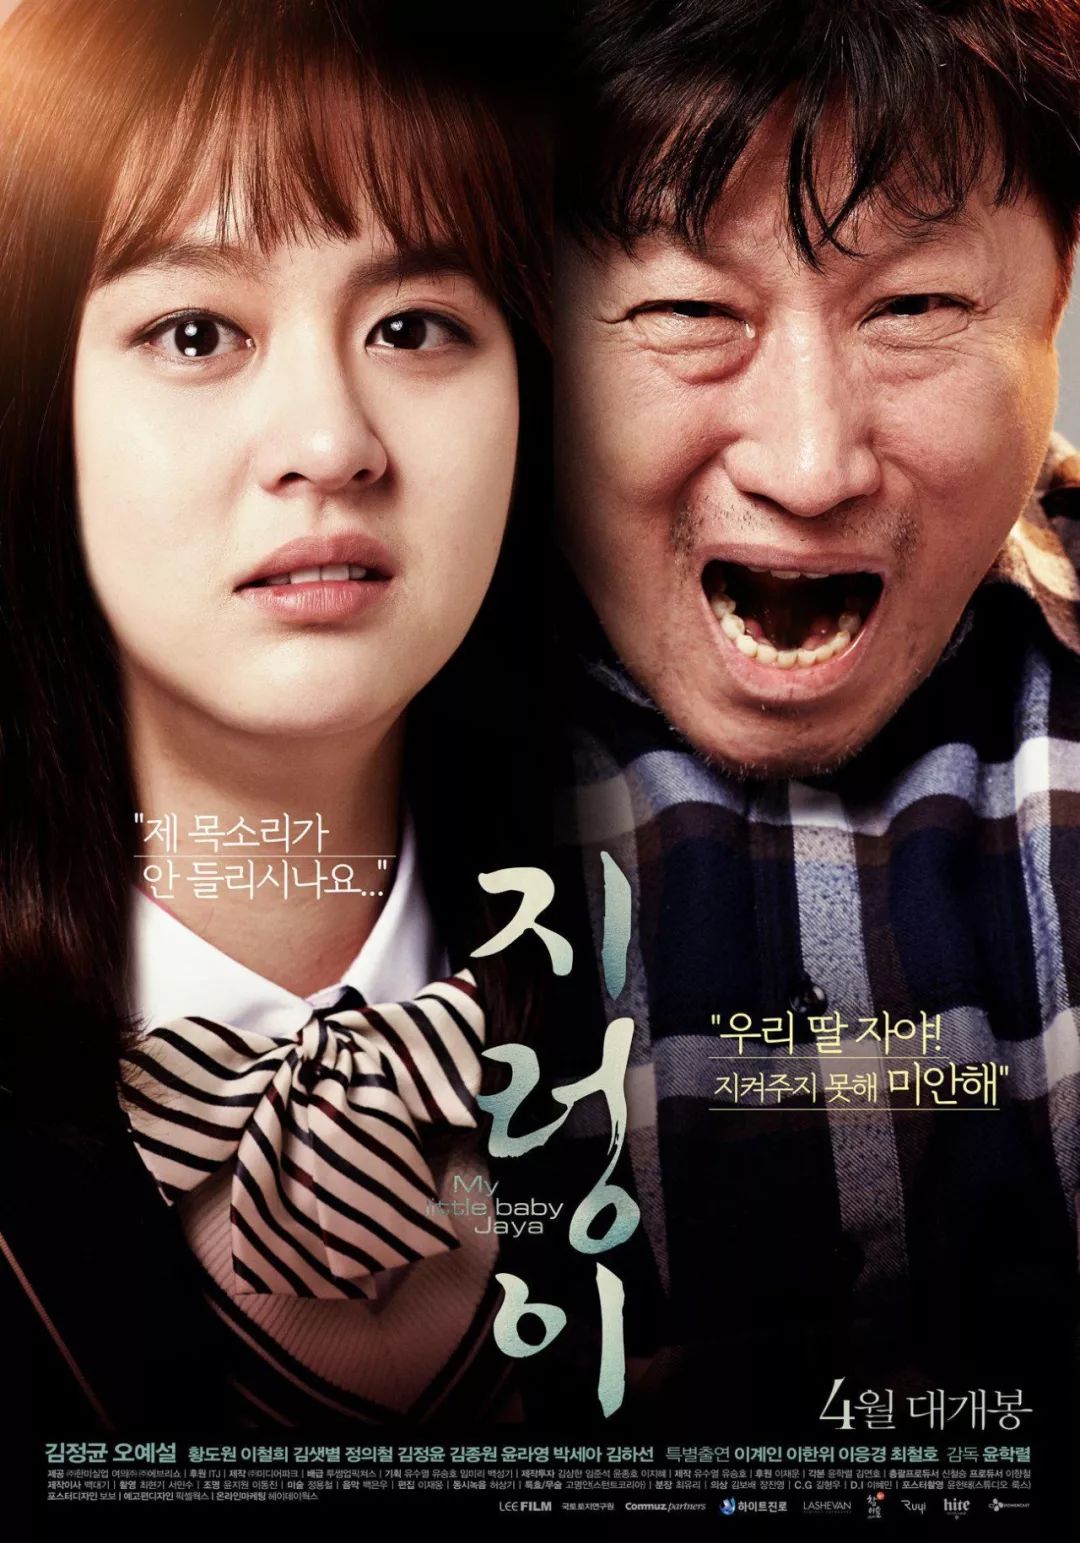 9部比较好看的韩国电影,揭露黑暗,诘问人性.